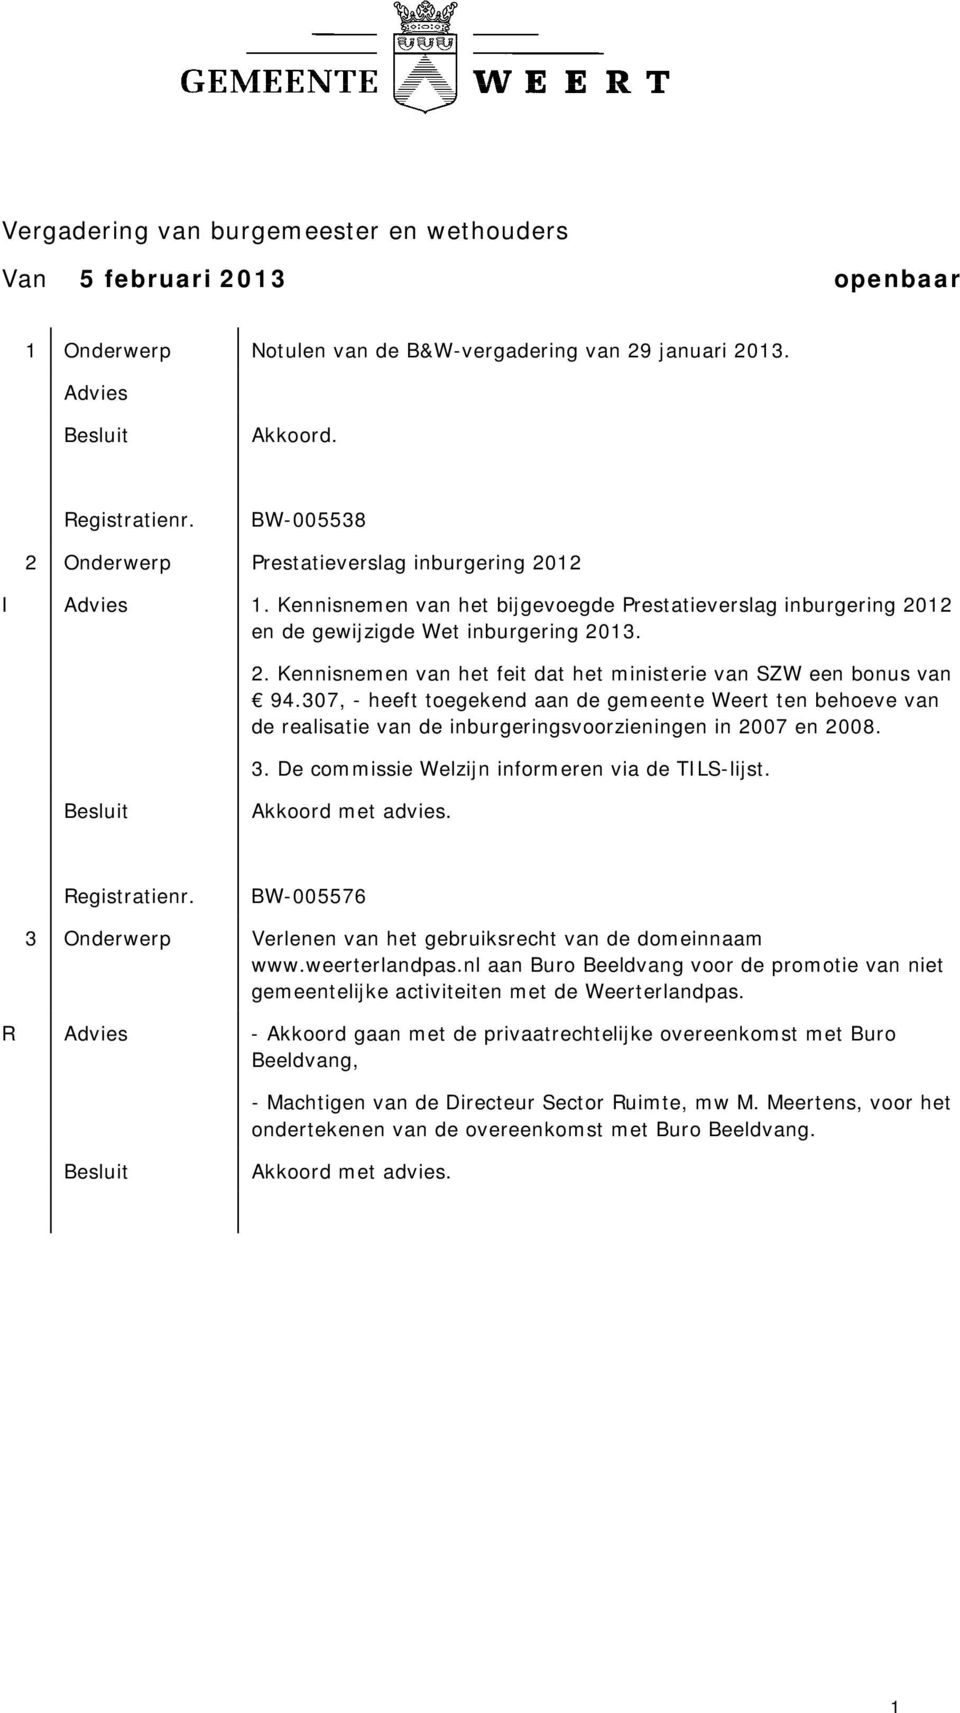 307, - heeft toegekend aan de gemeente Weert ten behoeve van de realisatie van de inburgeringsvoorzieningen in 2007 en 2008. 3. De commissie Welzijn informeren via de TILS-lijst.